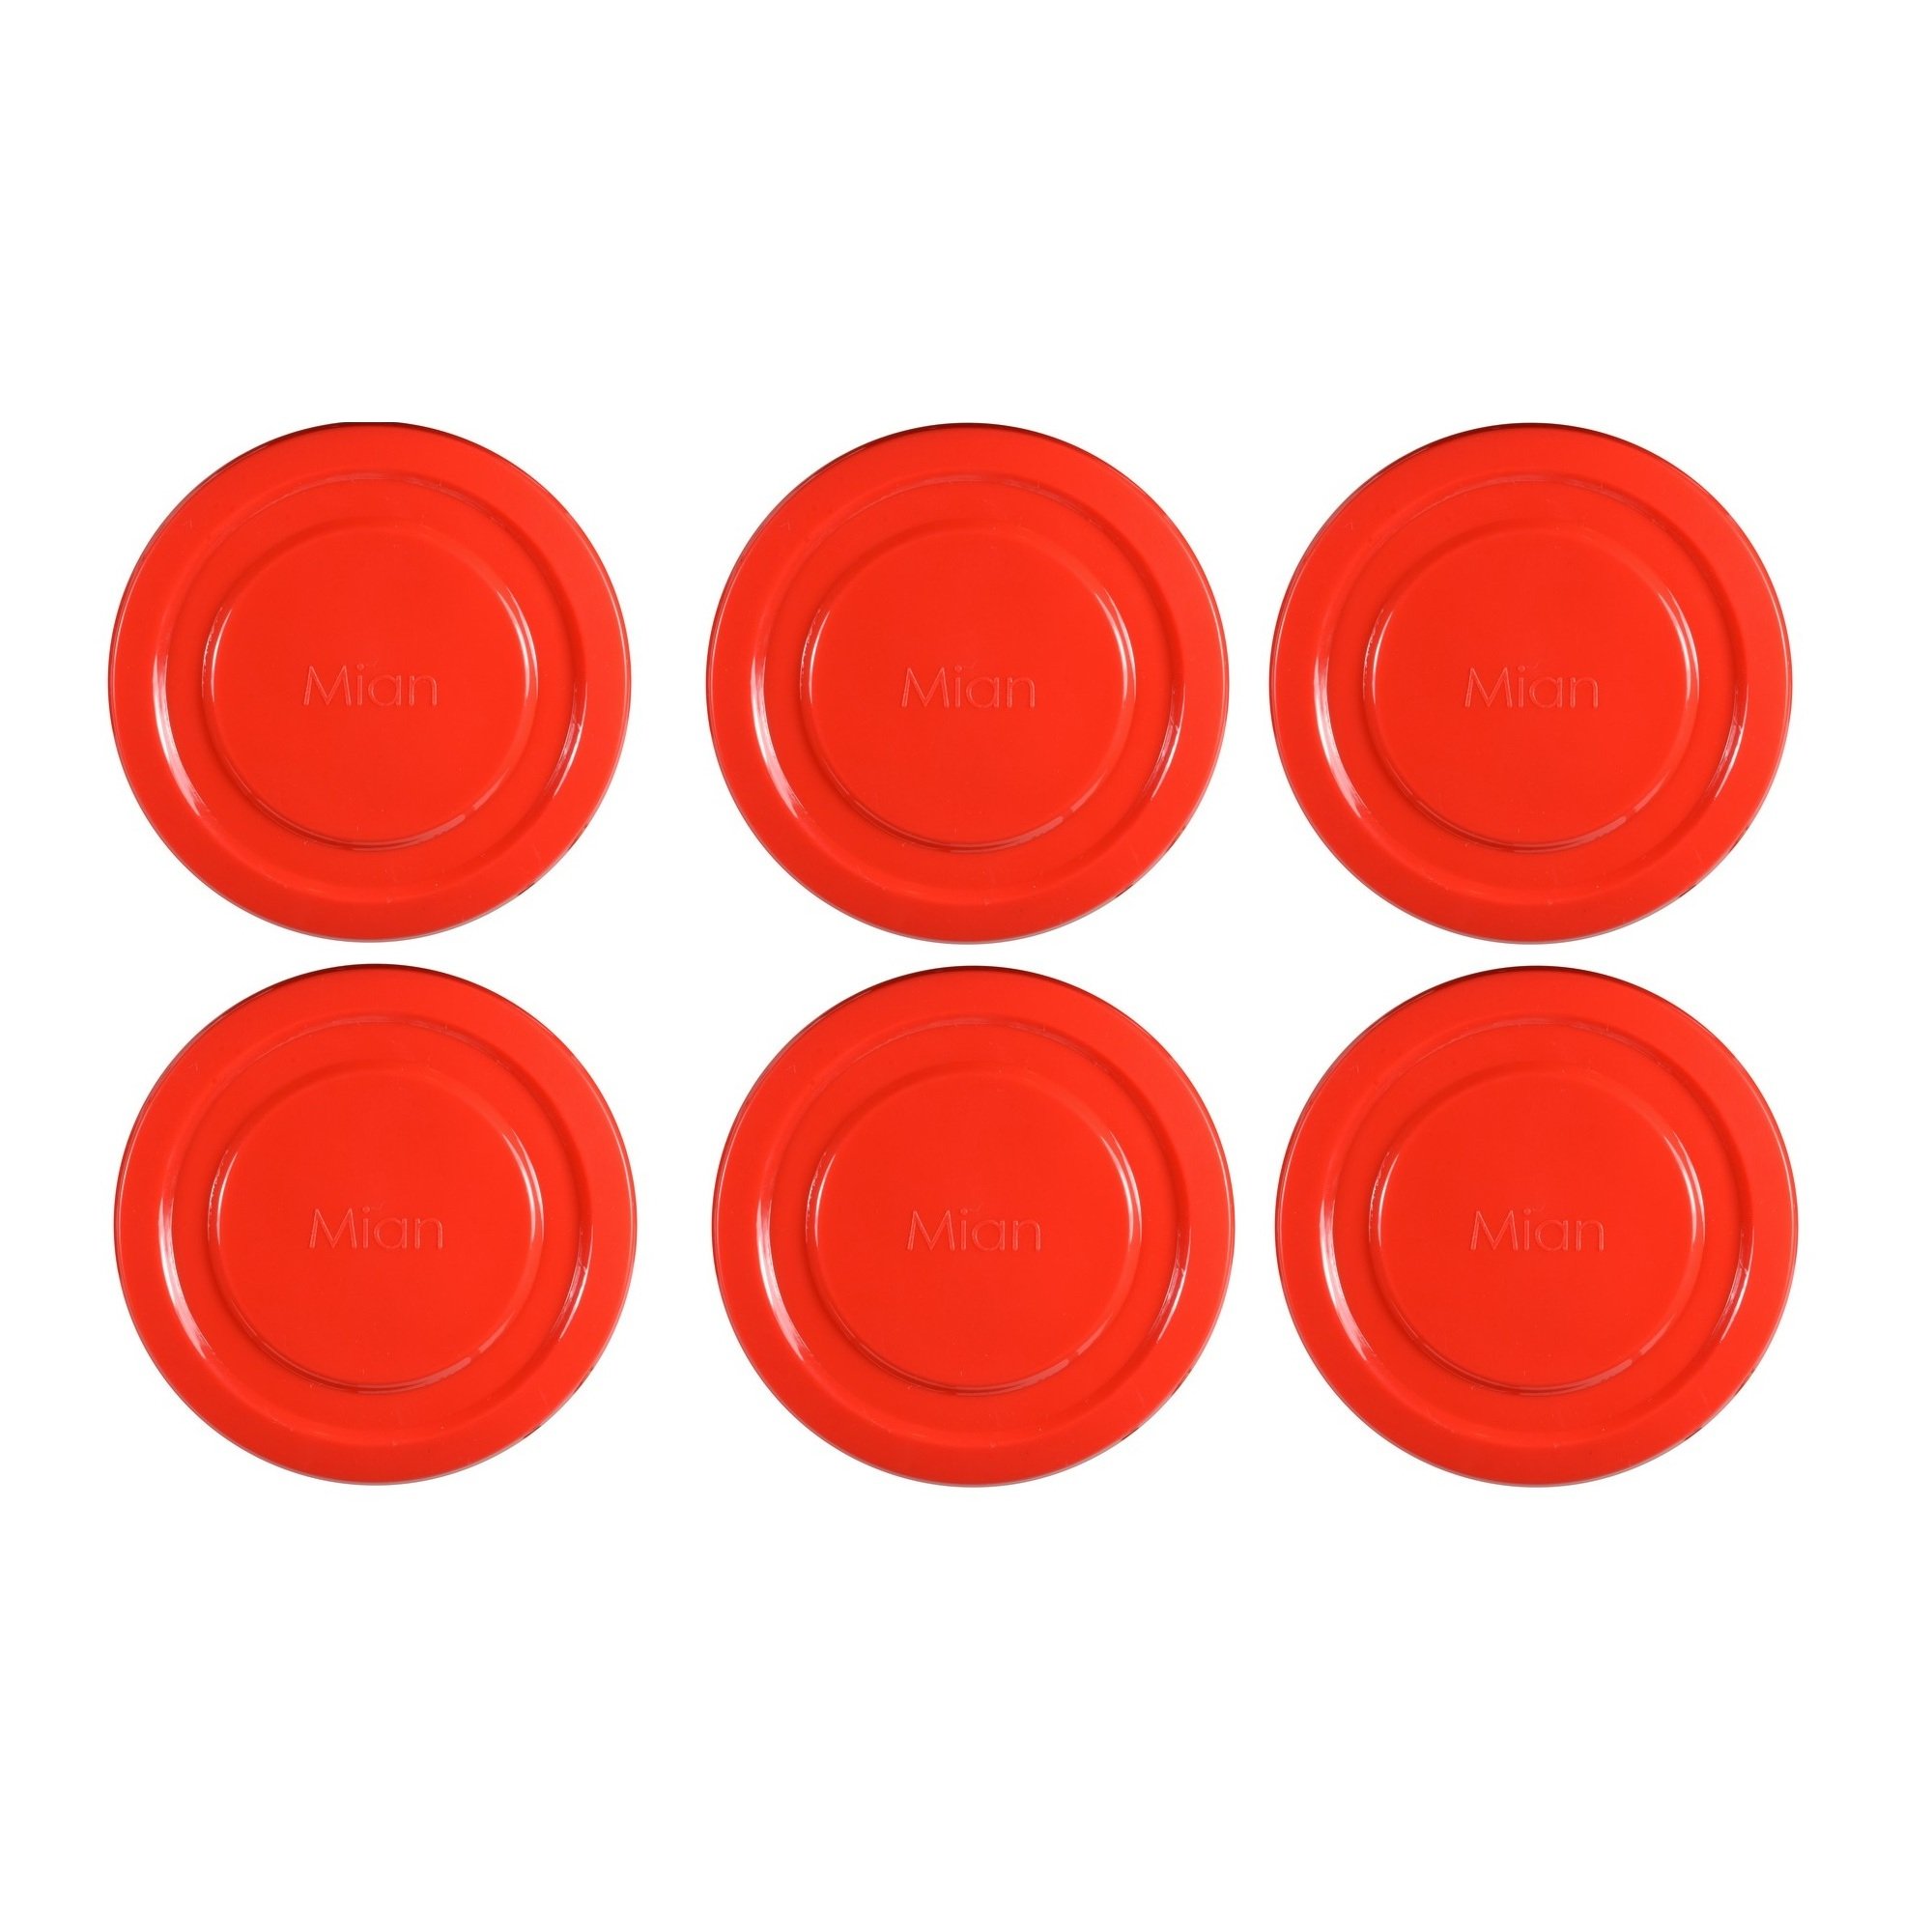 Mian Red Plastic Lids fits Luminarc Working glass 6 Pack